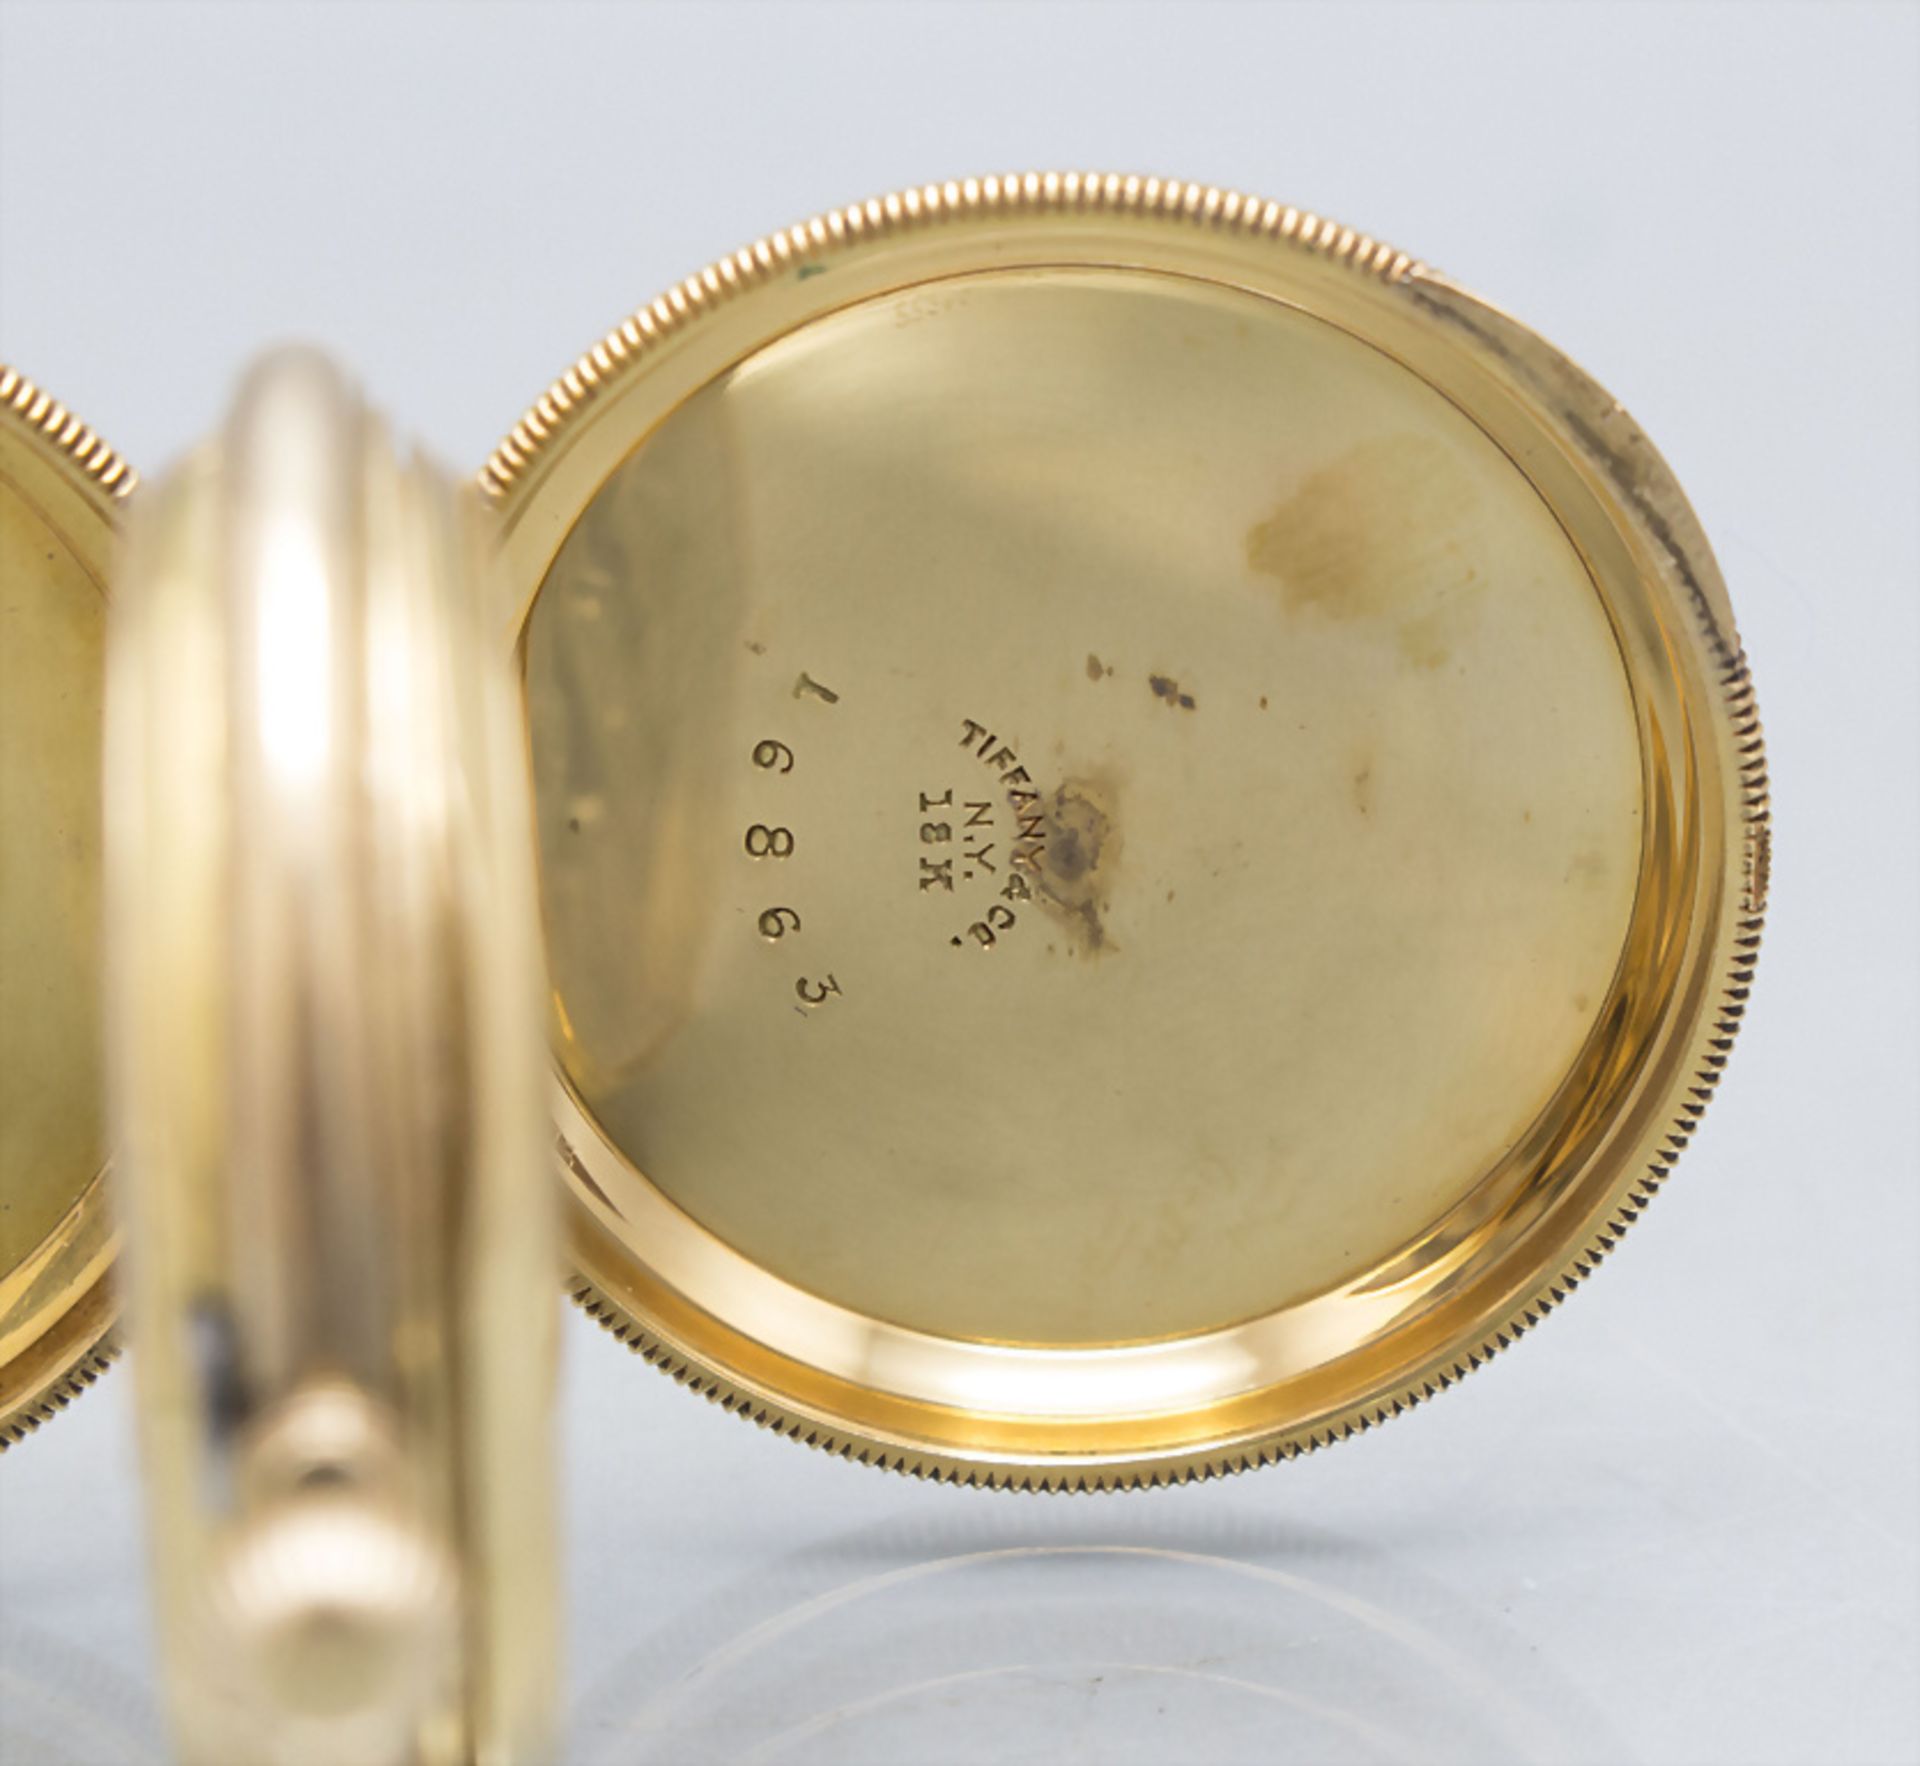 Savonette Taschenuhr / An 18 ct gold pocket watch, Tiffany & Co., New York, um 1910 - Image 4 of 7